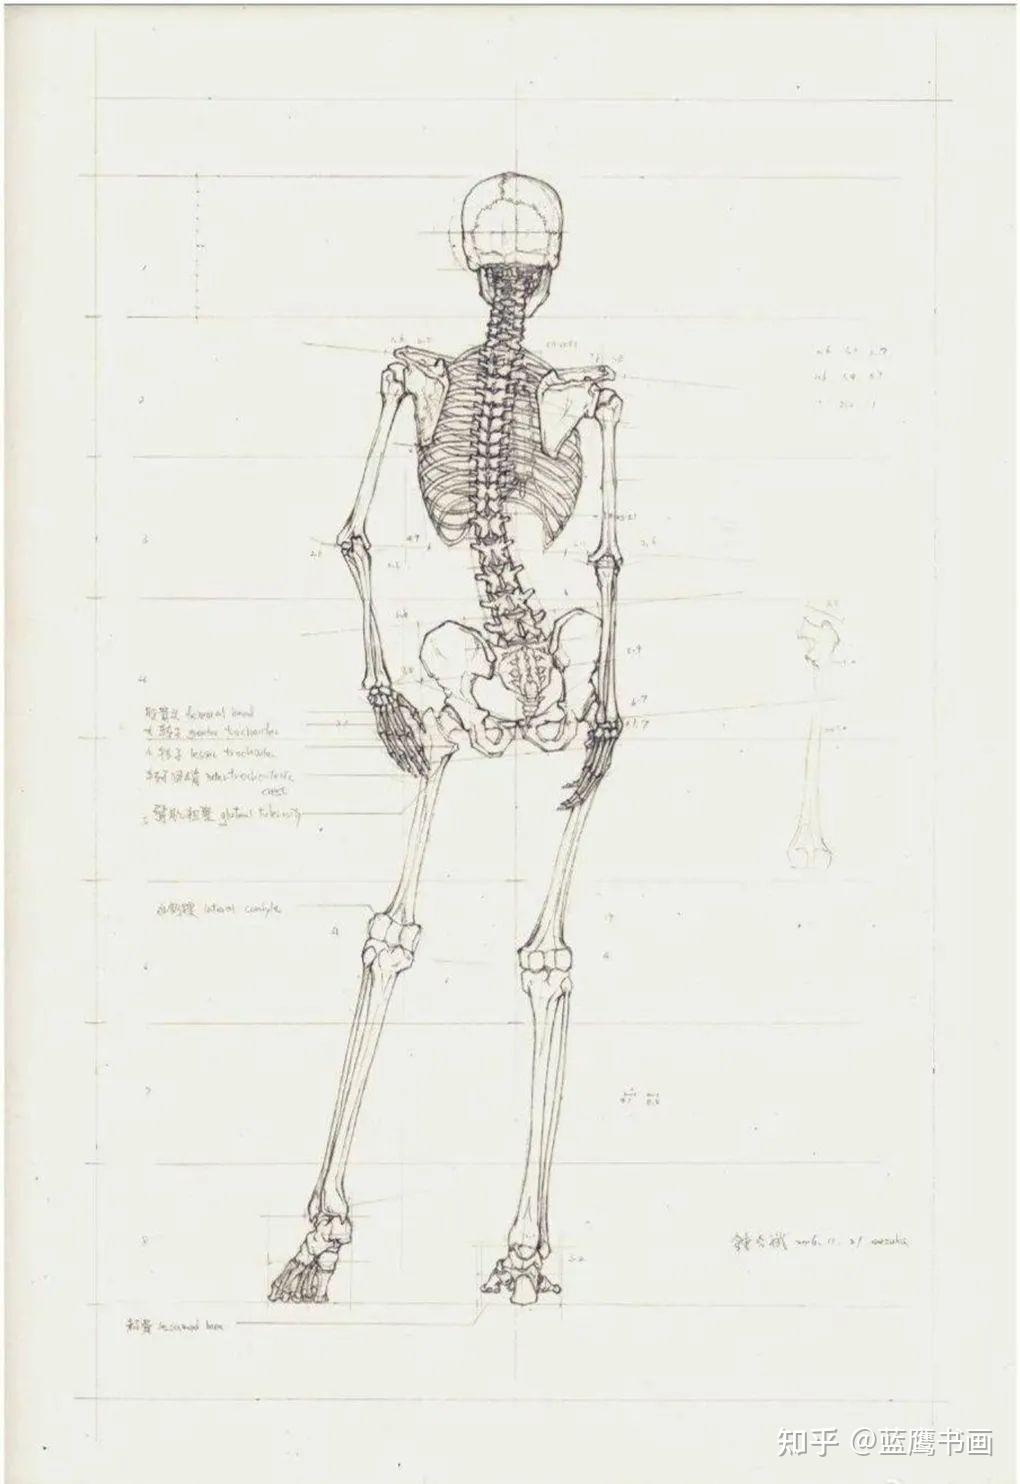 医学专业高材生手绘人体骨骼图,斩获国际设计大奖